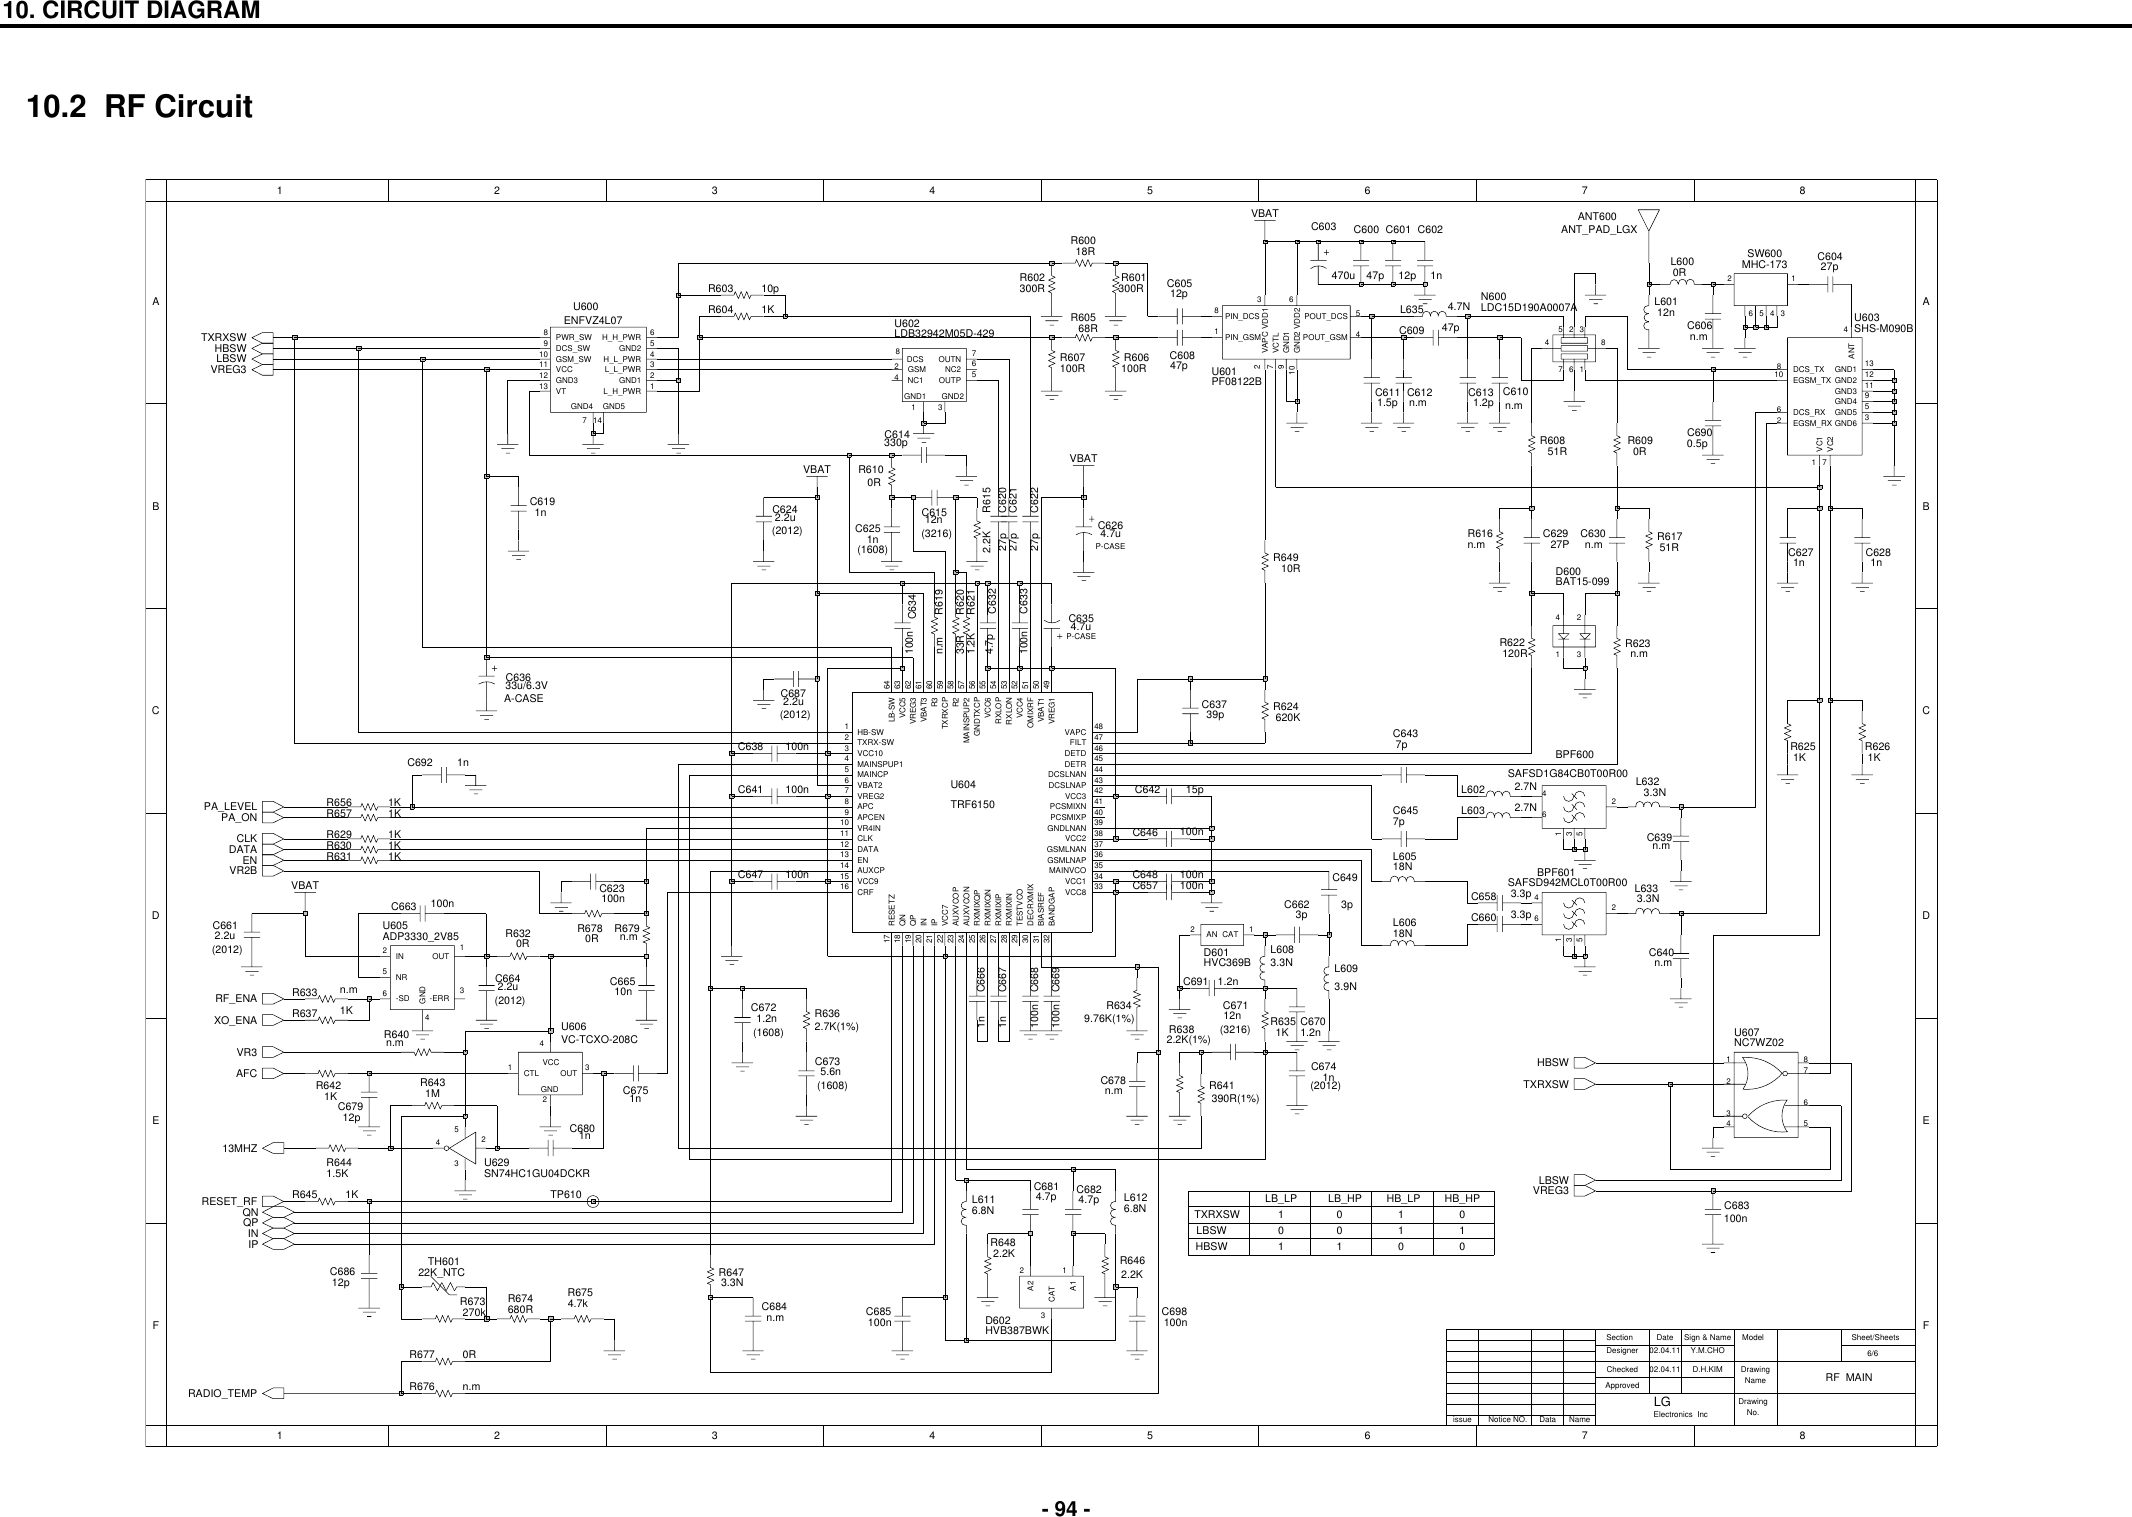 Page 6 of 9 - LG G7020 - Schematics. Www.s-manuals.com. Schematics